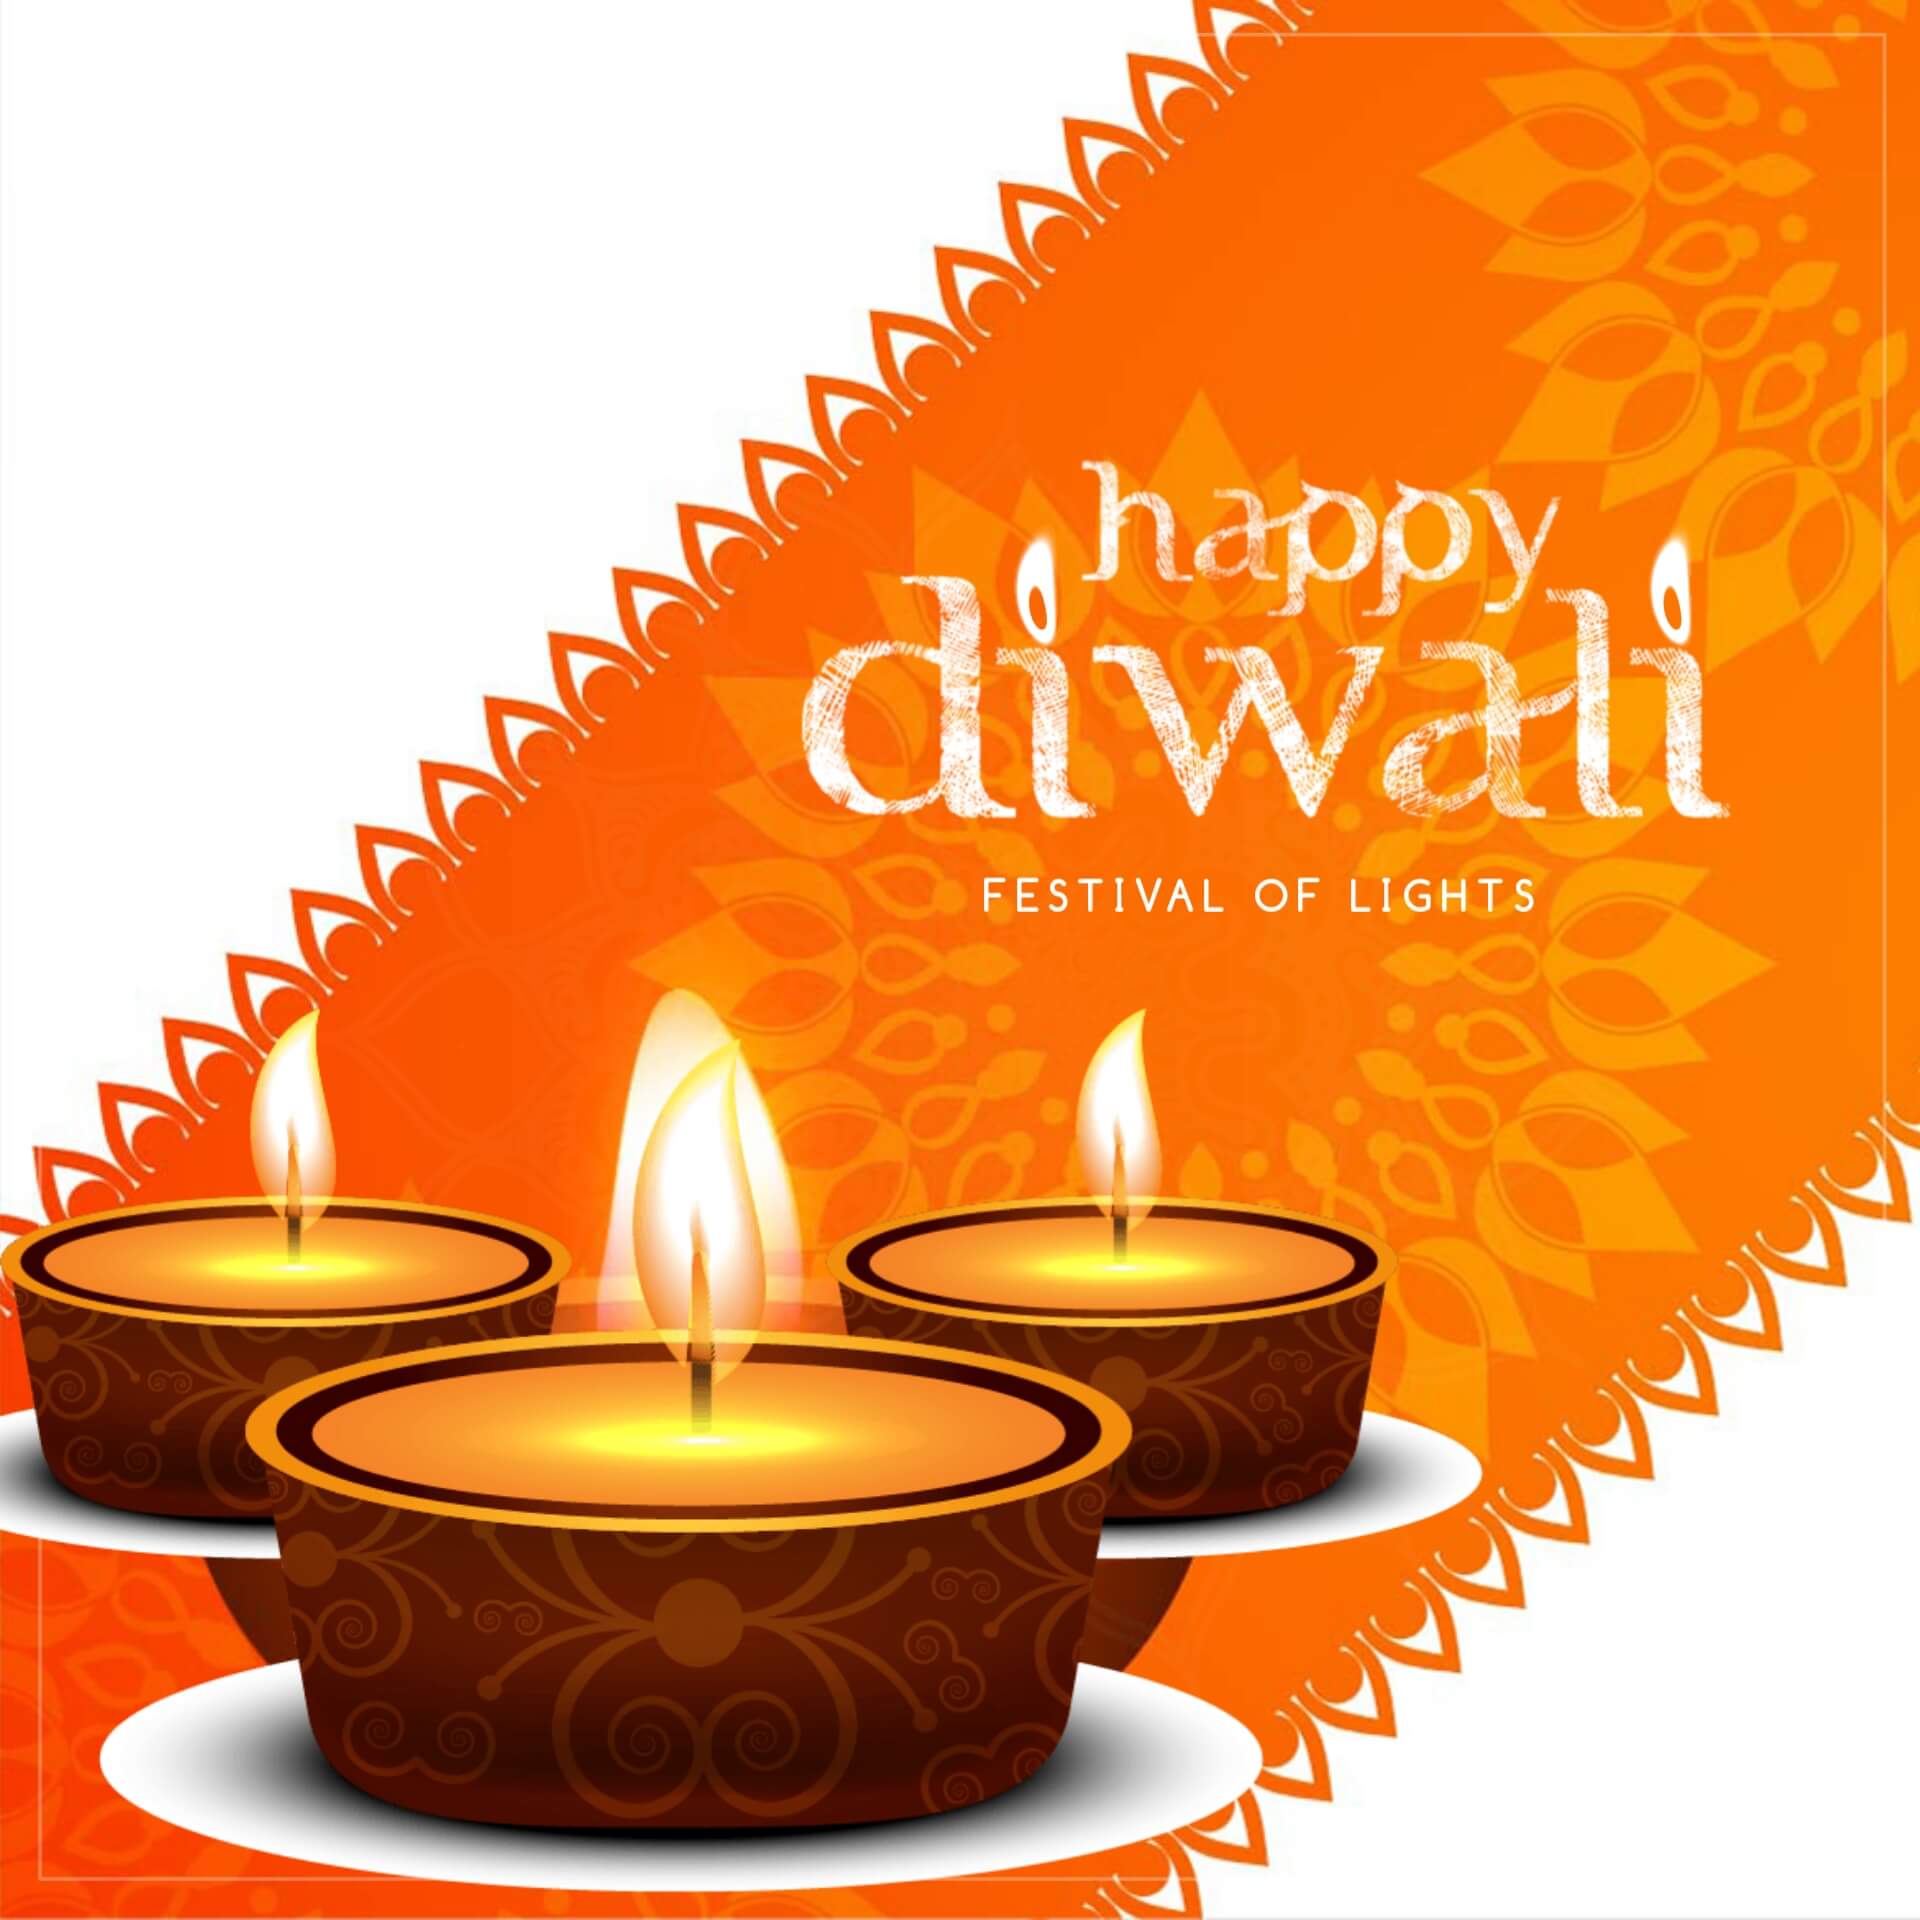 WhatsApp Happy Diwali Image